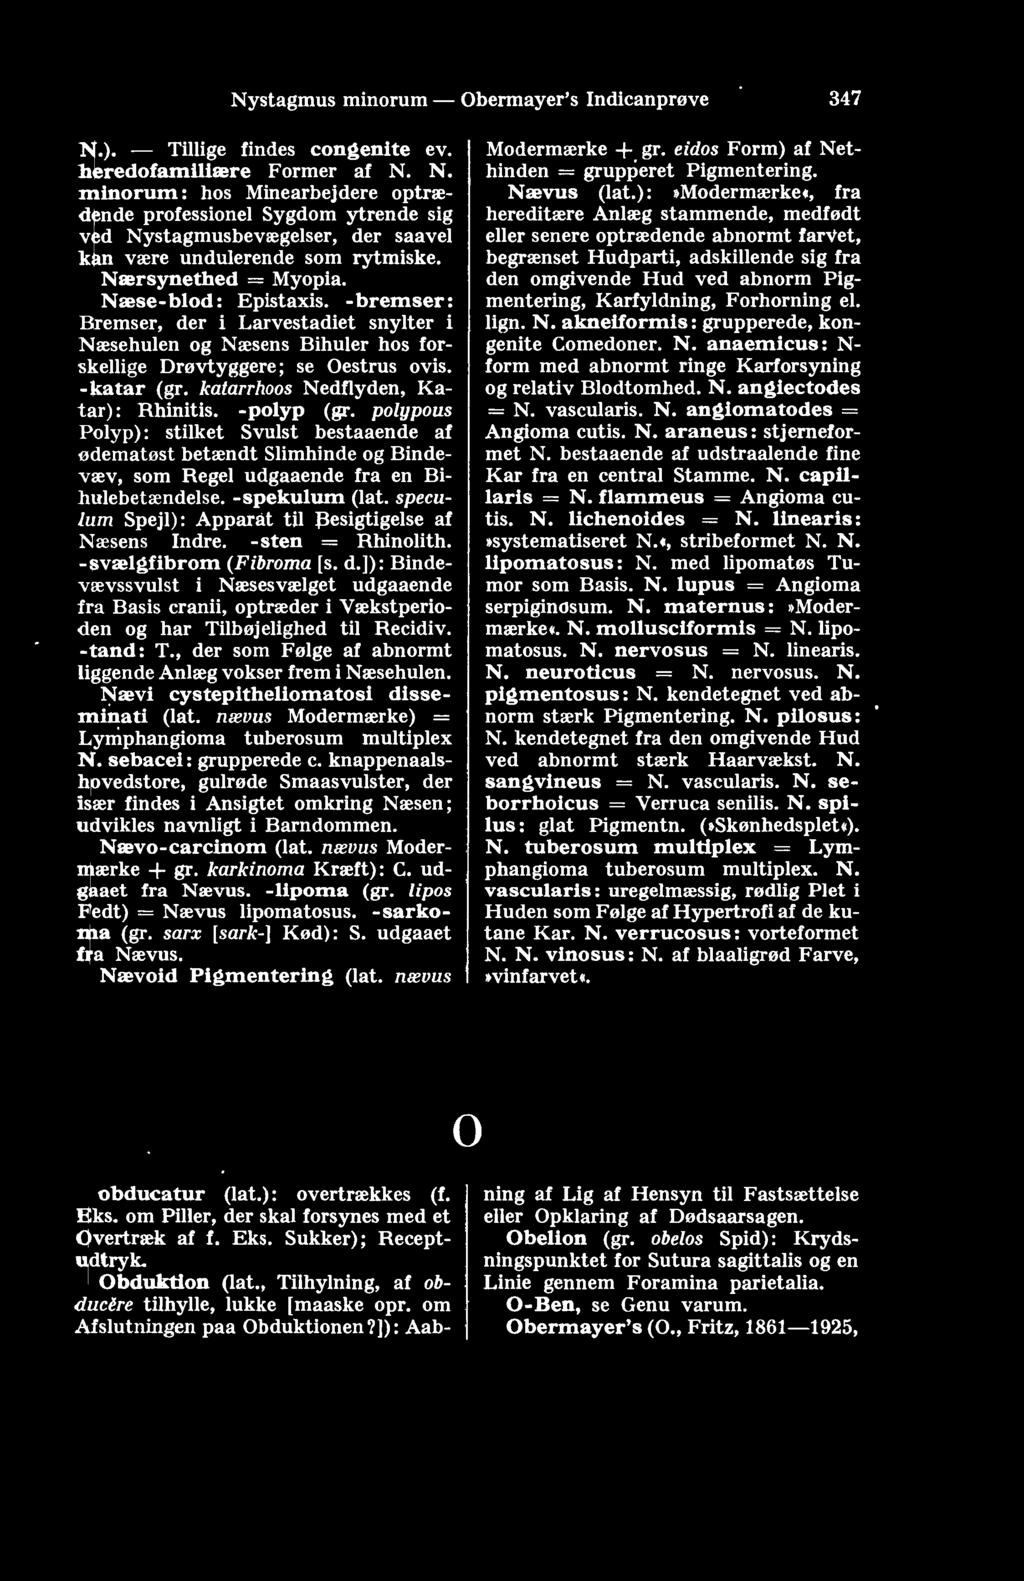 300 Løbemider - Macula corneae. tageise af store Mænader Lævulose, i Alm.  mere end 150 g; en spontan Lævulosuri findes. Løbemider, se Trombidium. -  PDF Free Download